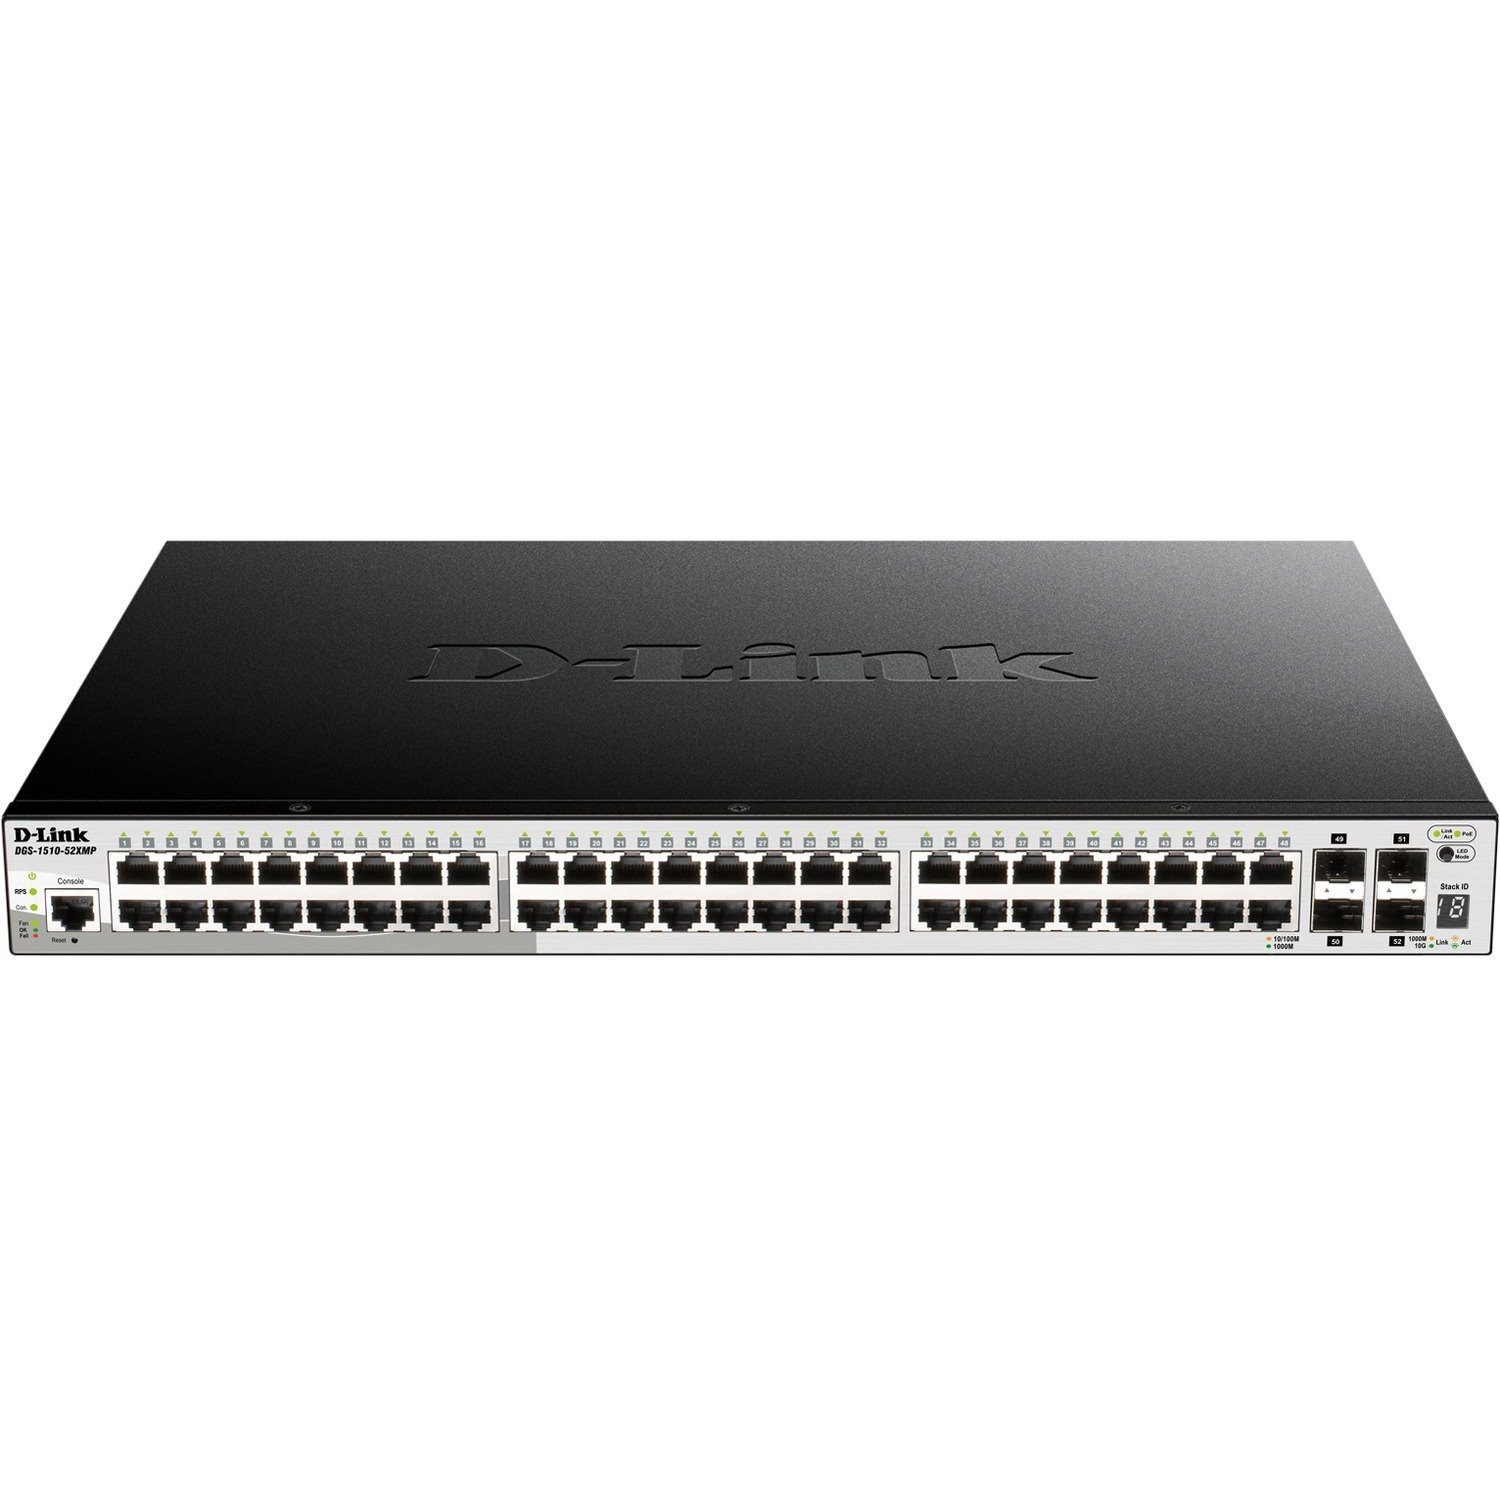 D-Link DGS-1510 DGS-1510-52X 48 Ports Manageable Ethernet Switch - Gigabit Ethernet, 10 Gigabit Ethernet - 10/100/1000Base-T, 10GBase-X